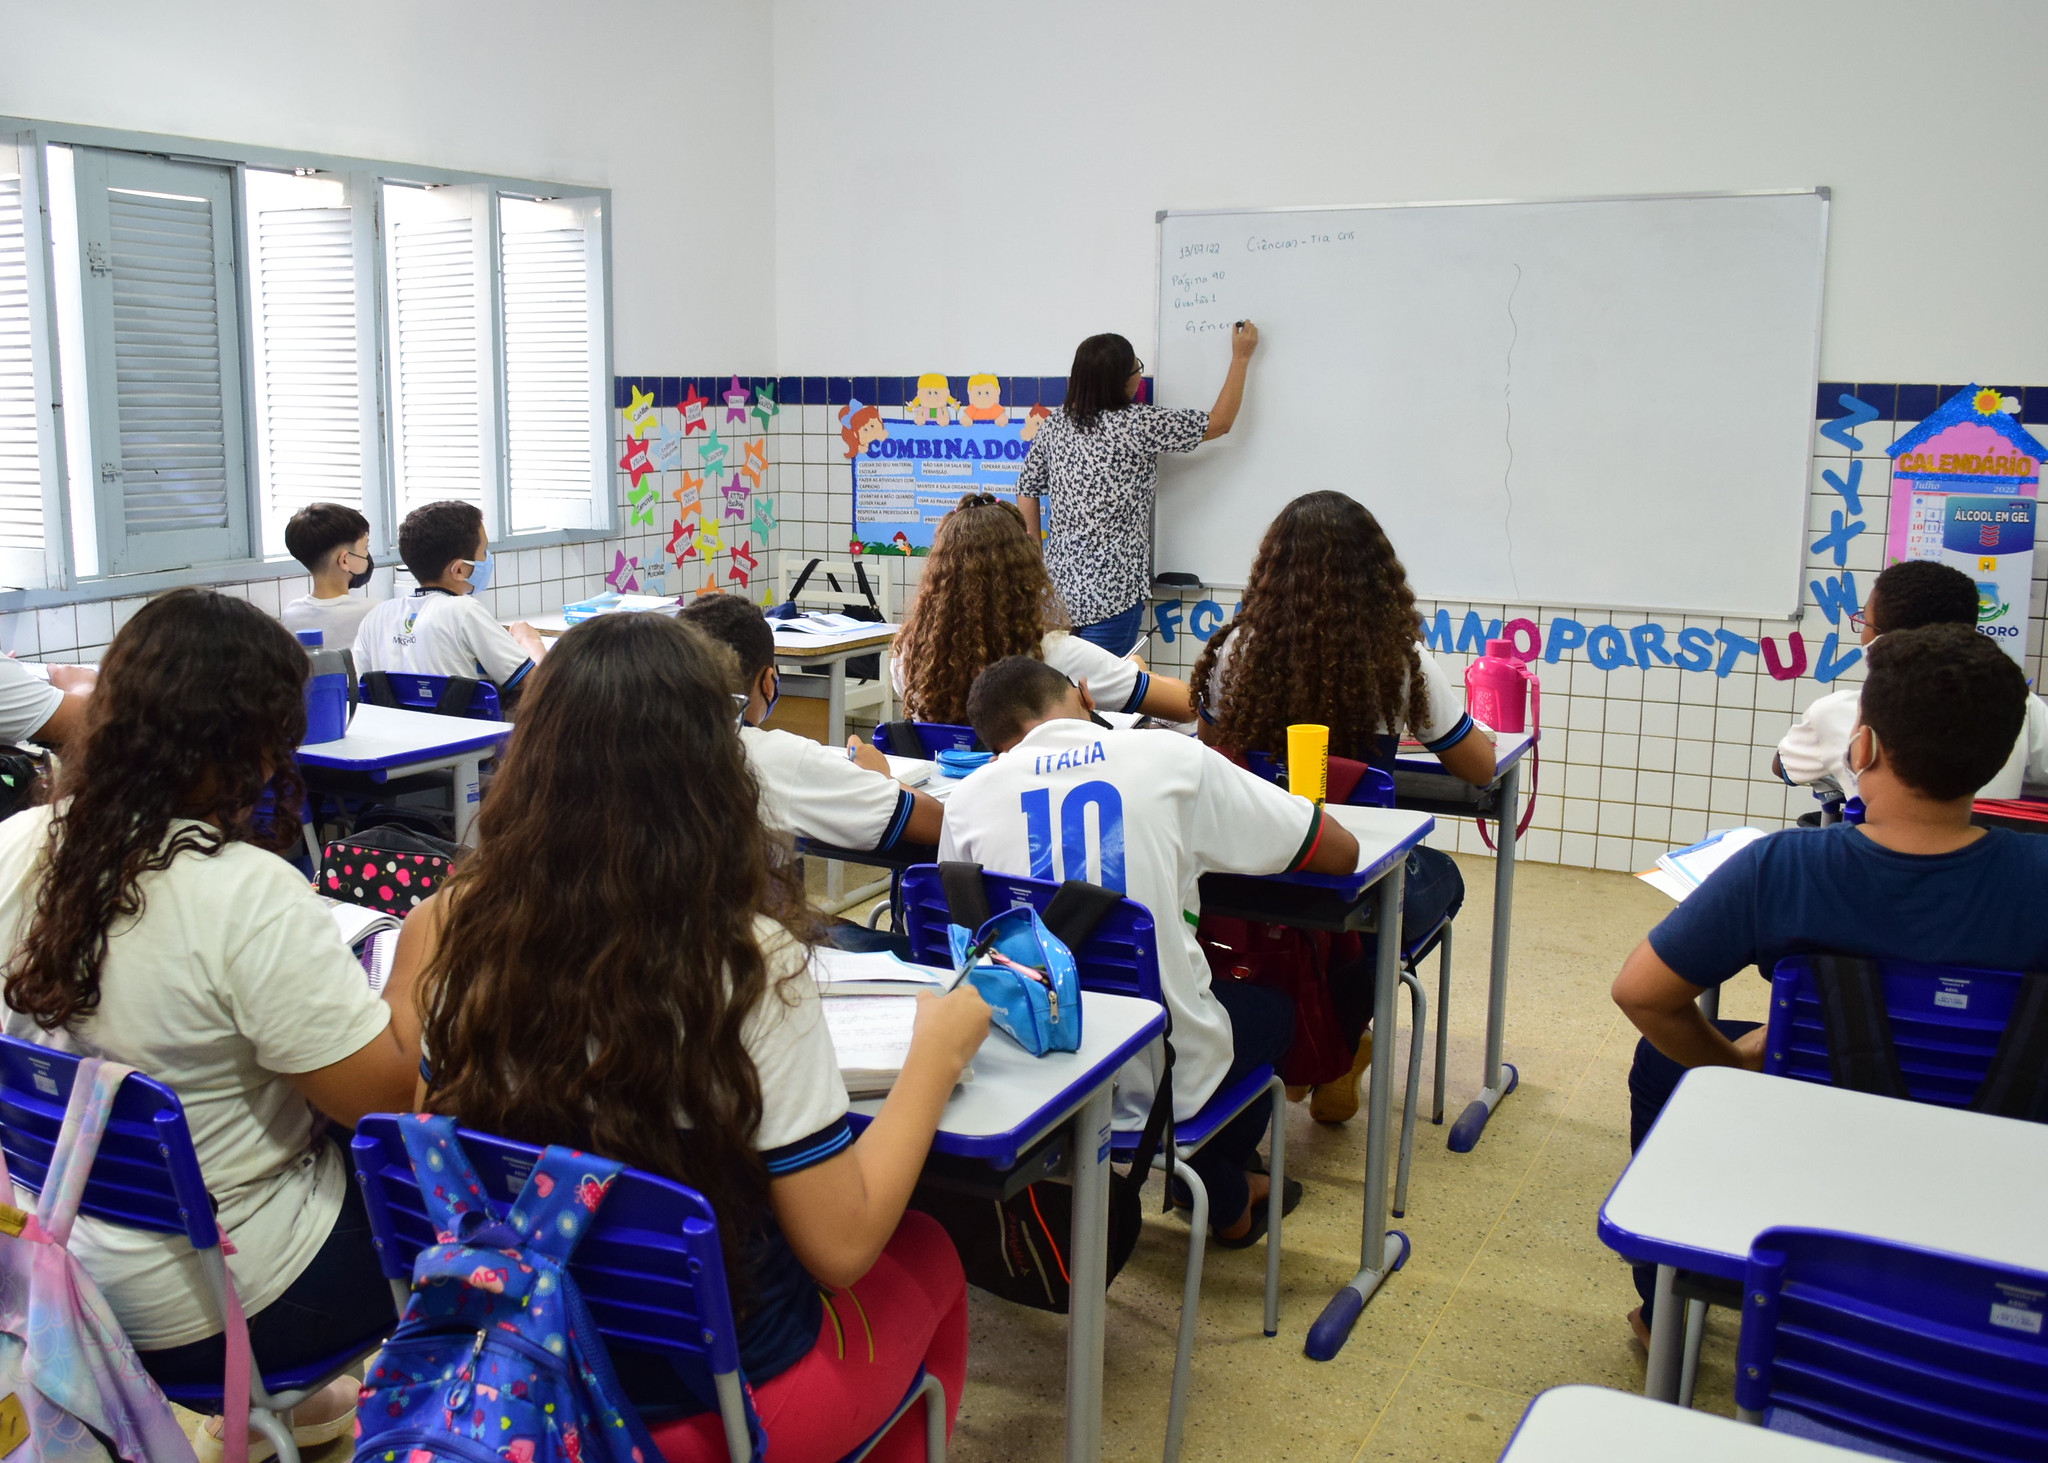 Prefeitura de Mossoró publica 11ª convocação de professores aprovados em processo seletivo